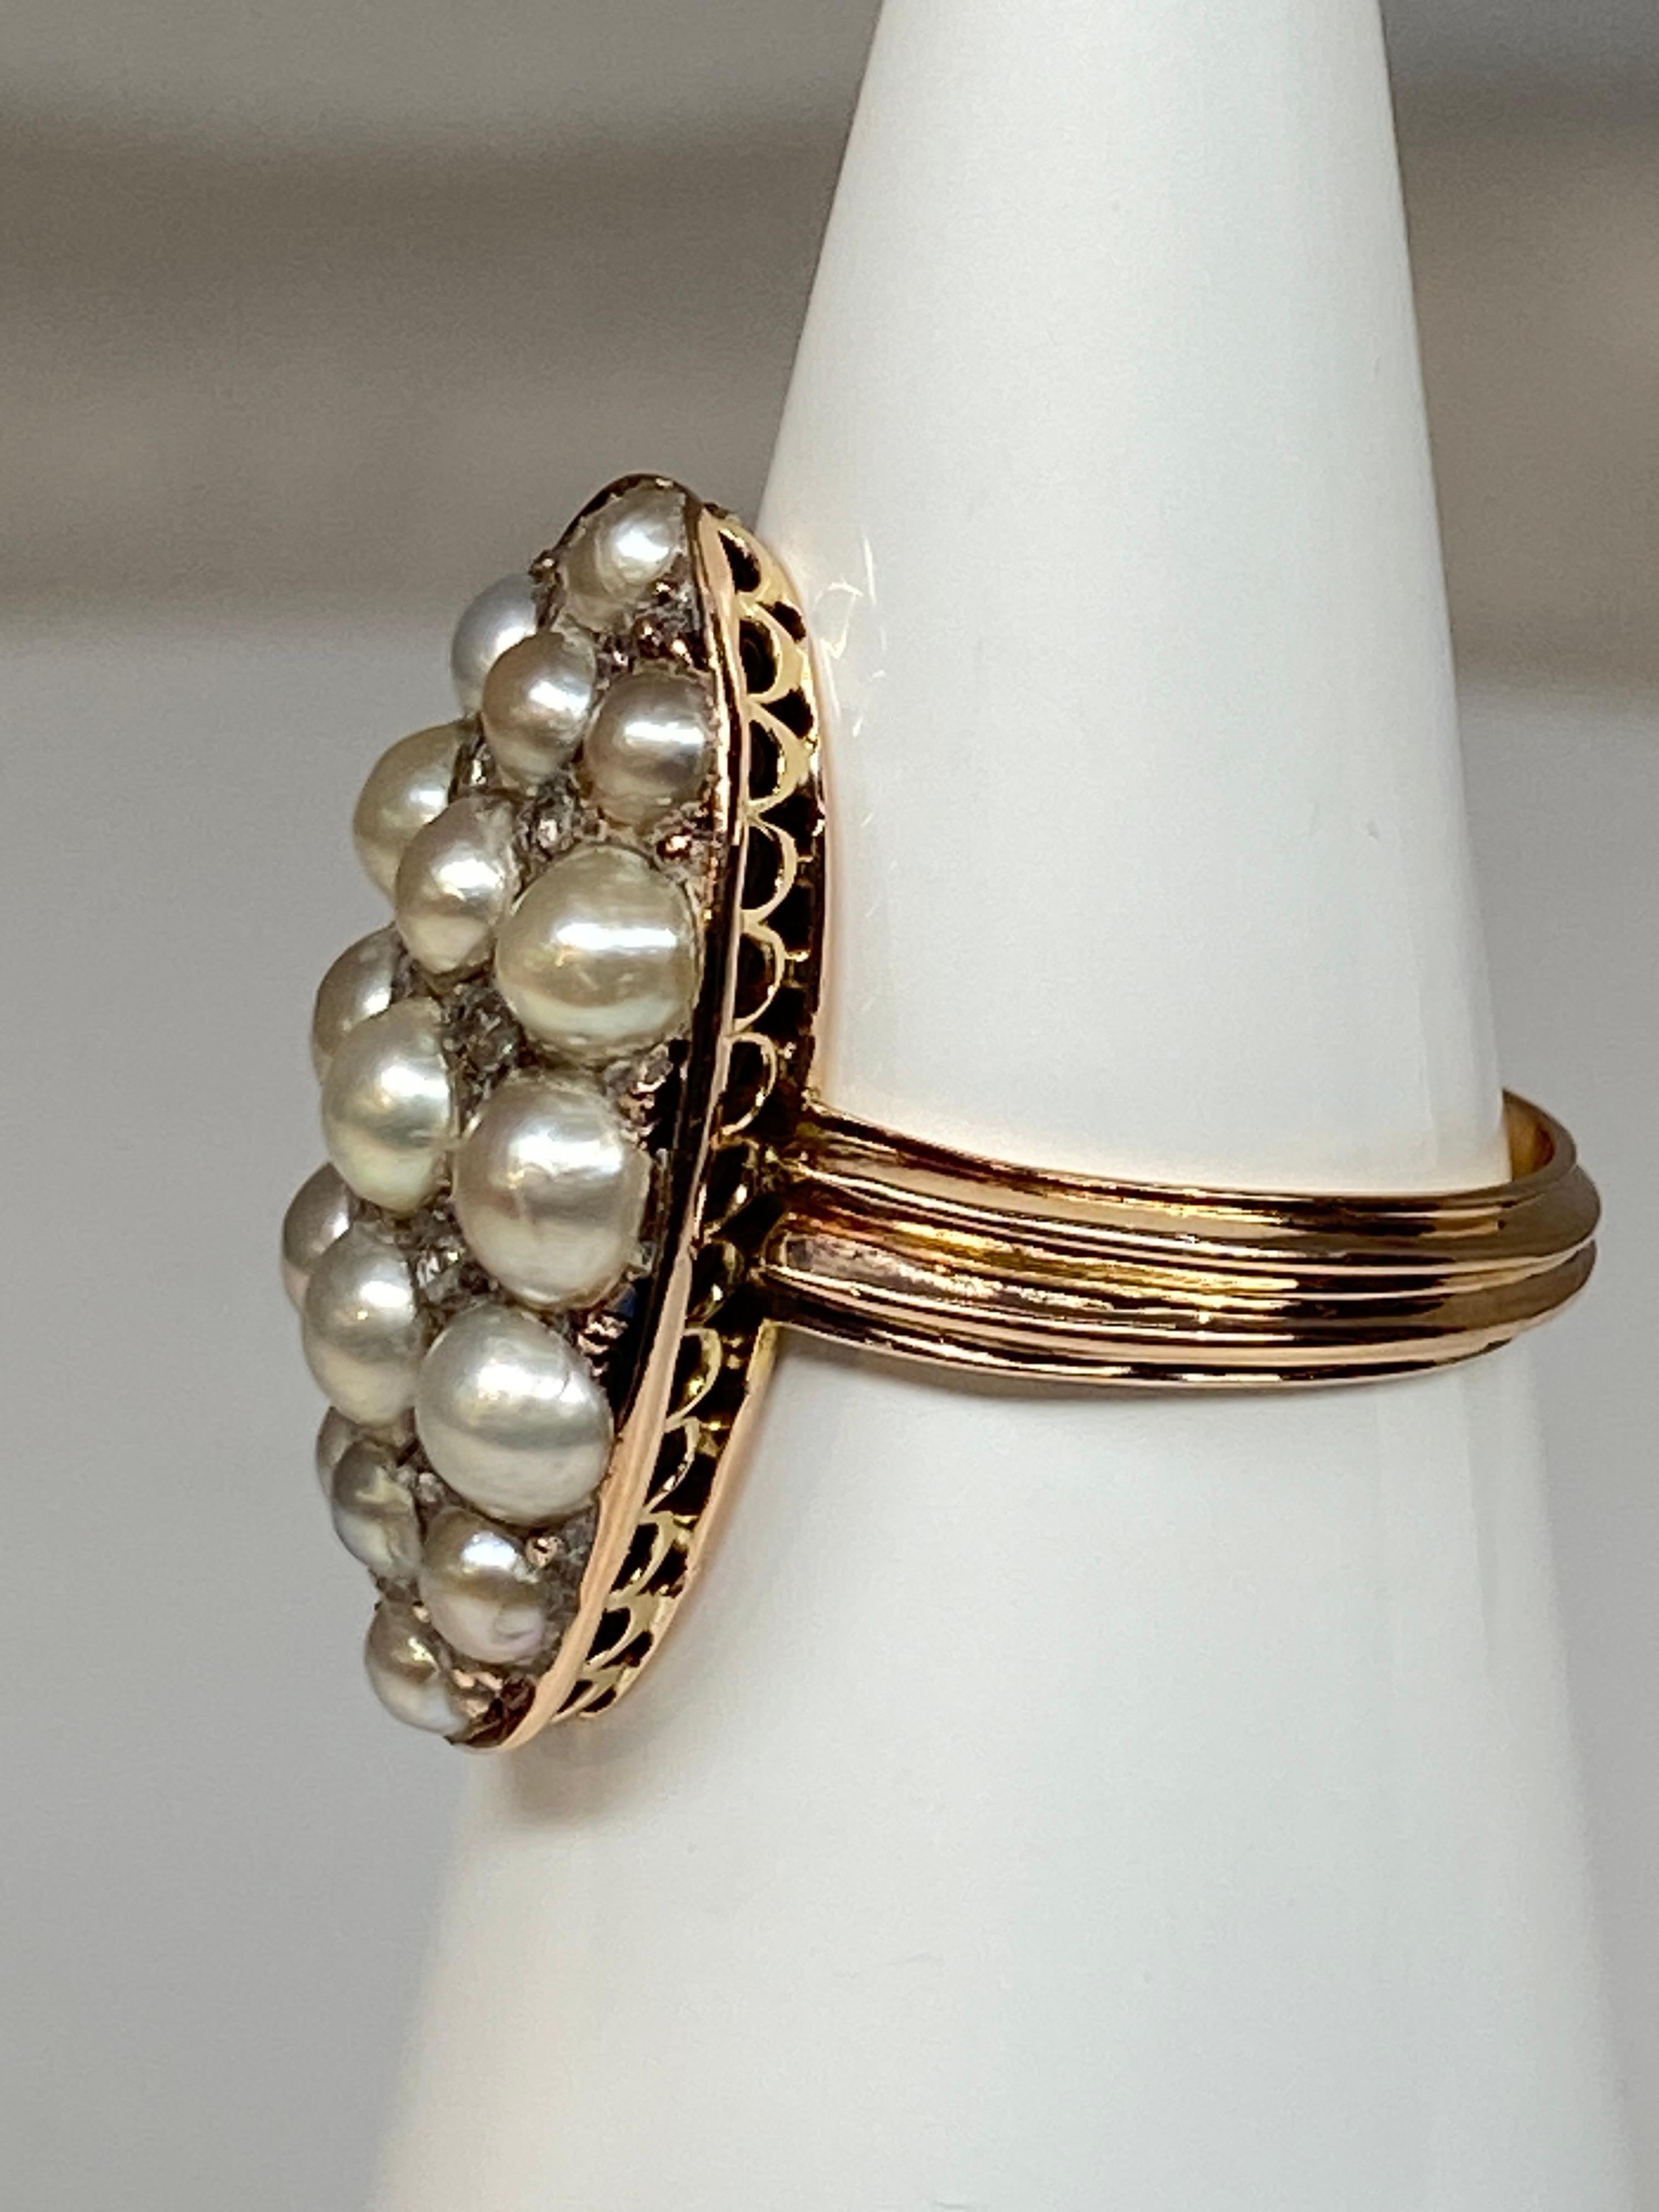 Superbe bague en or 18 carats de forme marquise sertie de 17 demi perles fines et de 8 diamants taillés en rose. Le panier est très finement ajouré, l’anneau est rehaussé de deux lignes d’or en relief. C’est une charmante bague très représentative